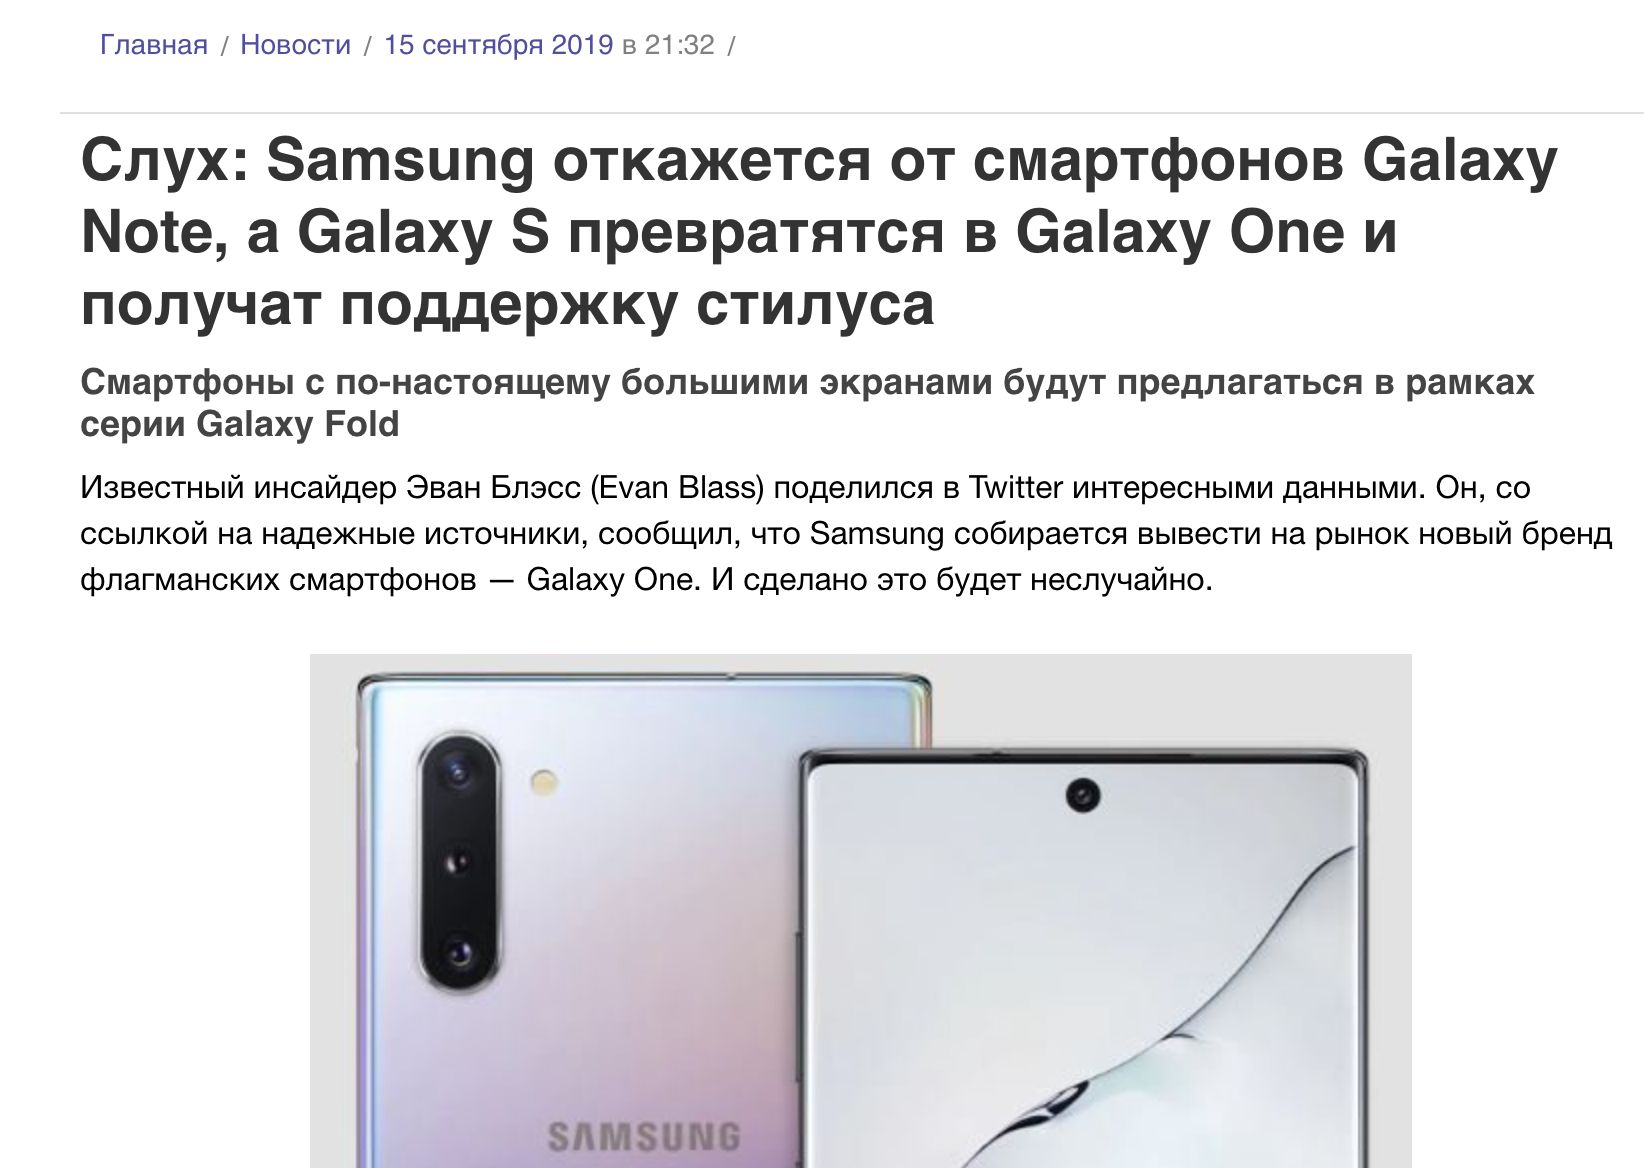 Похороны Galaxy Note от Samsung, смартфоны Note отменены навсегда Galaxy, Samsung, линейки, очень, будет, модели, новости, продажи, этого, несколько, линейка, смартфонов, станет, первый, рынке, можно, компания, появляются, устройств, диагональю